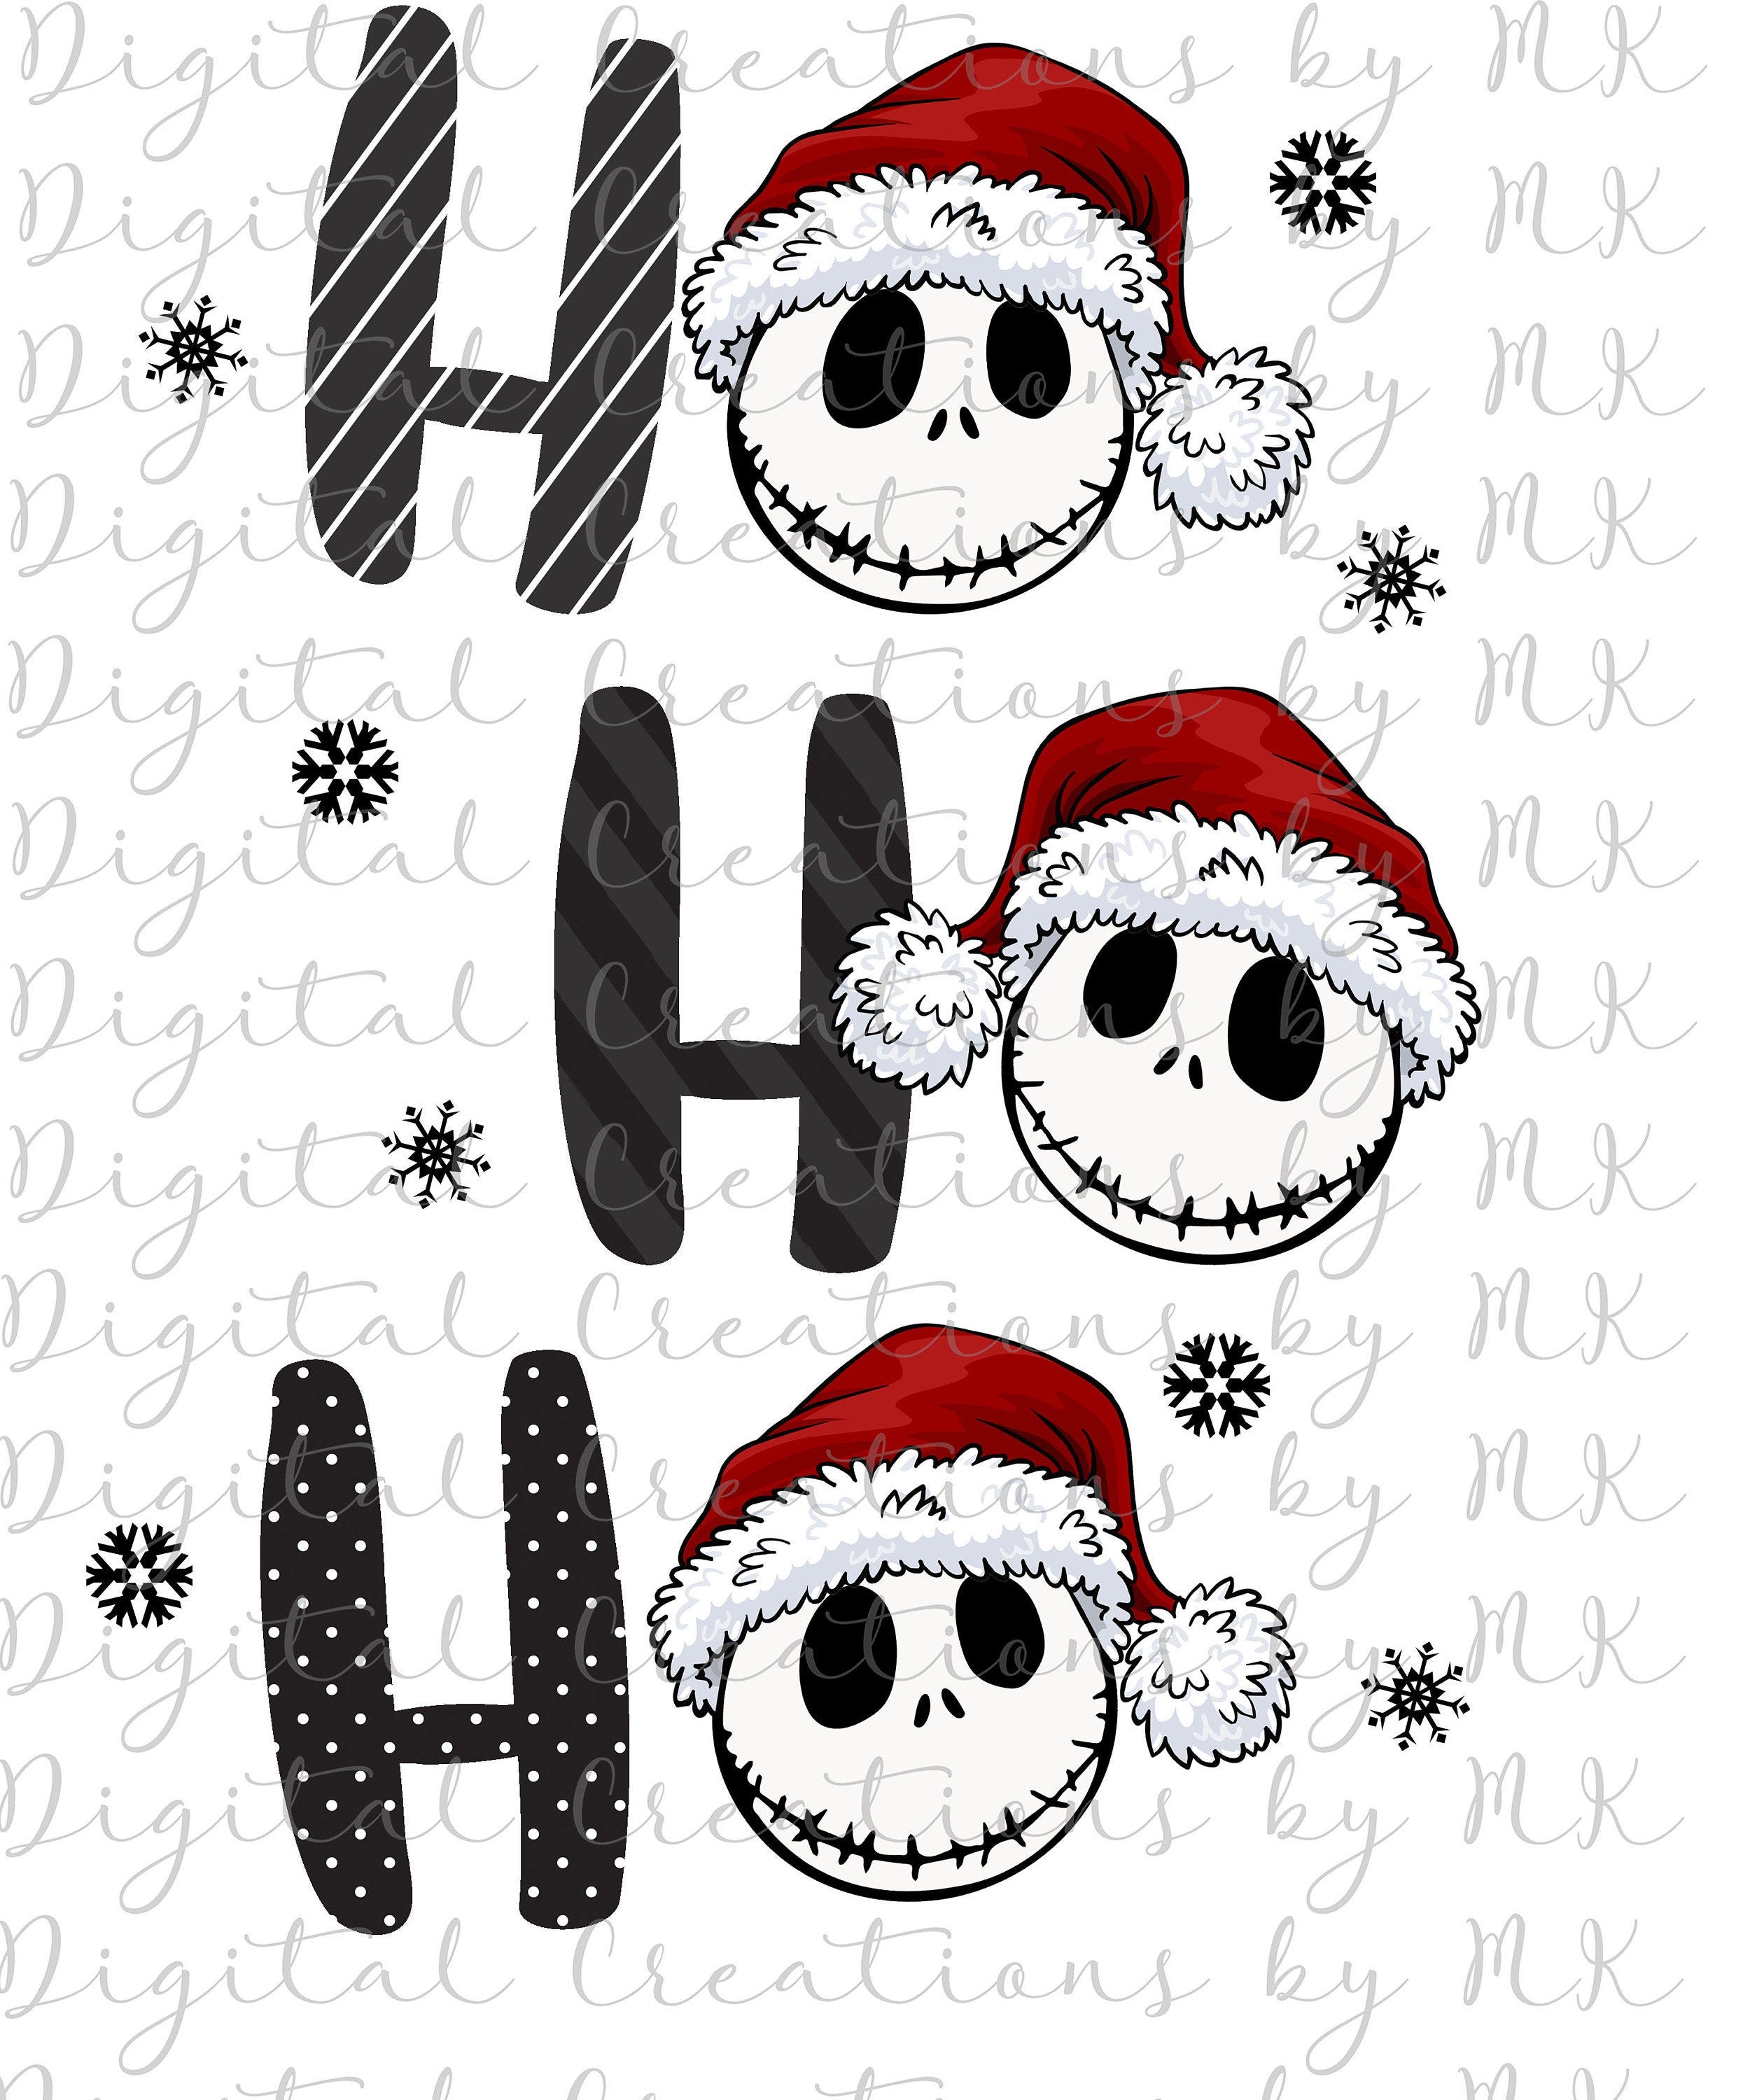 Nightmare Before Christmas, Jack Skellington, Ho Ho Ho, PNG 300 dpi Digital File, Instant Download